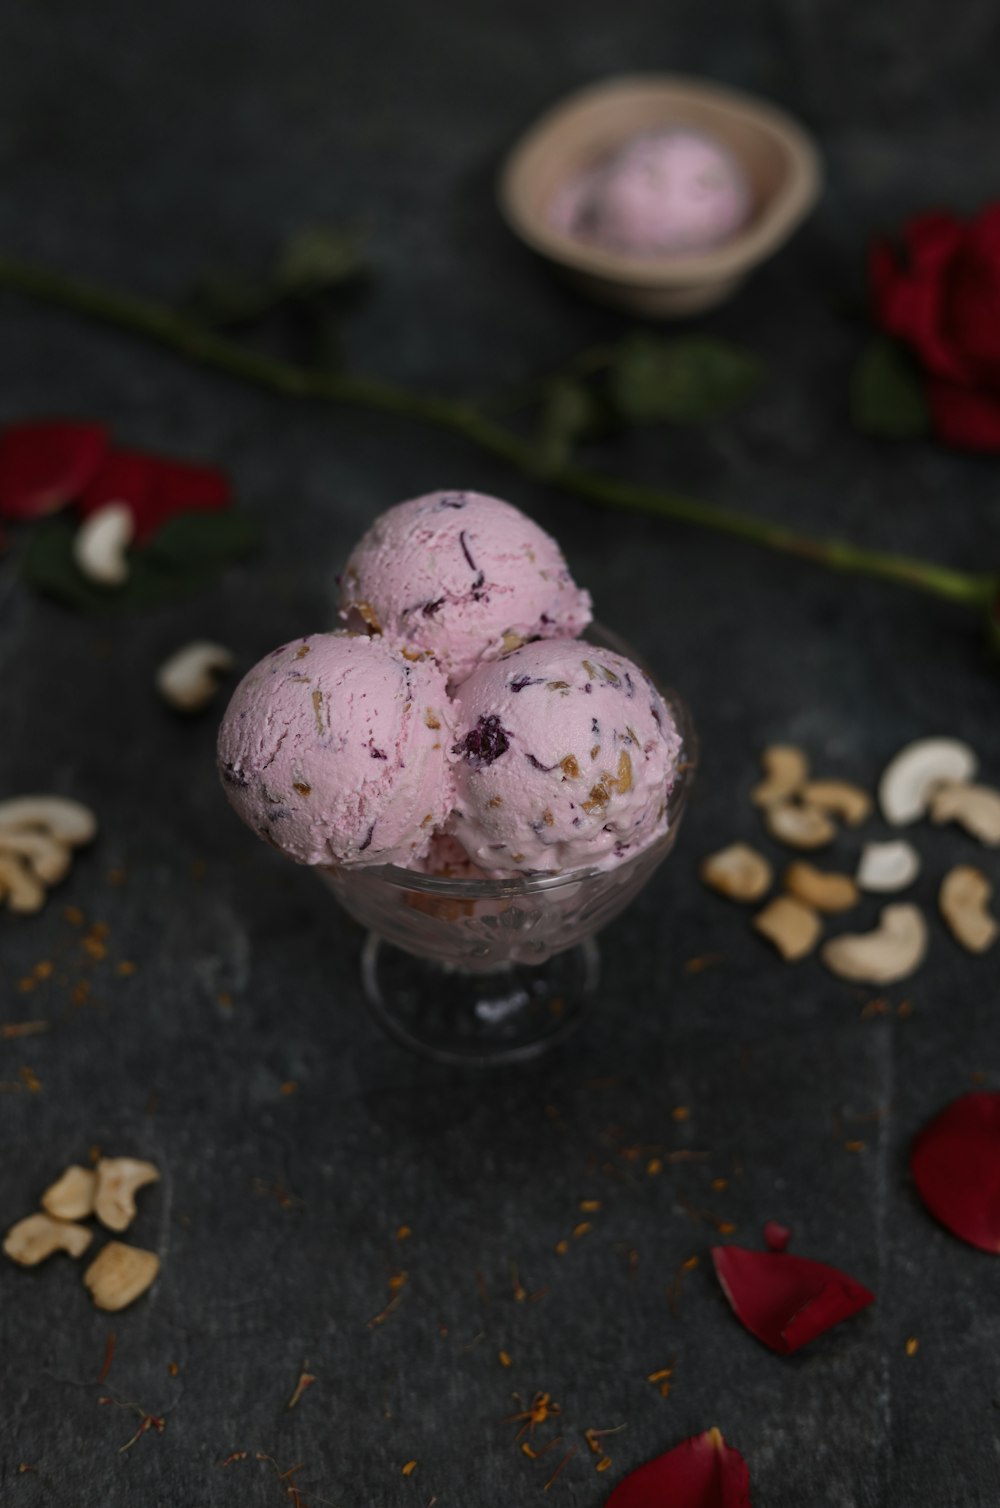 ice cream with cherry on top